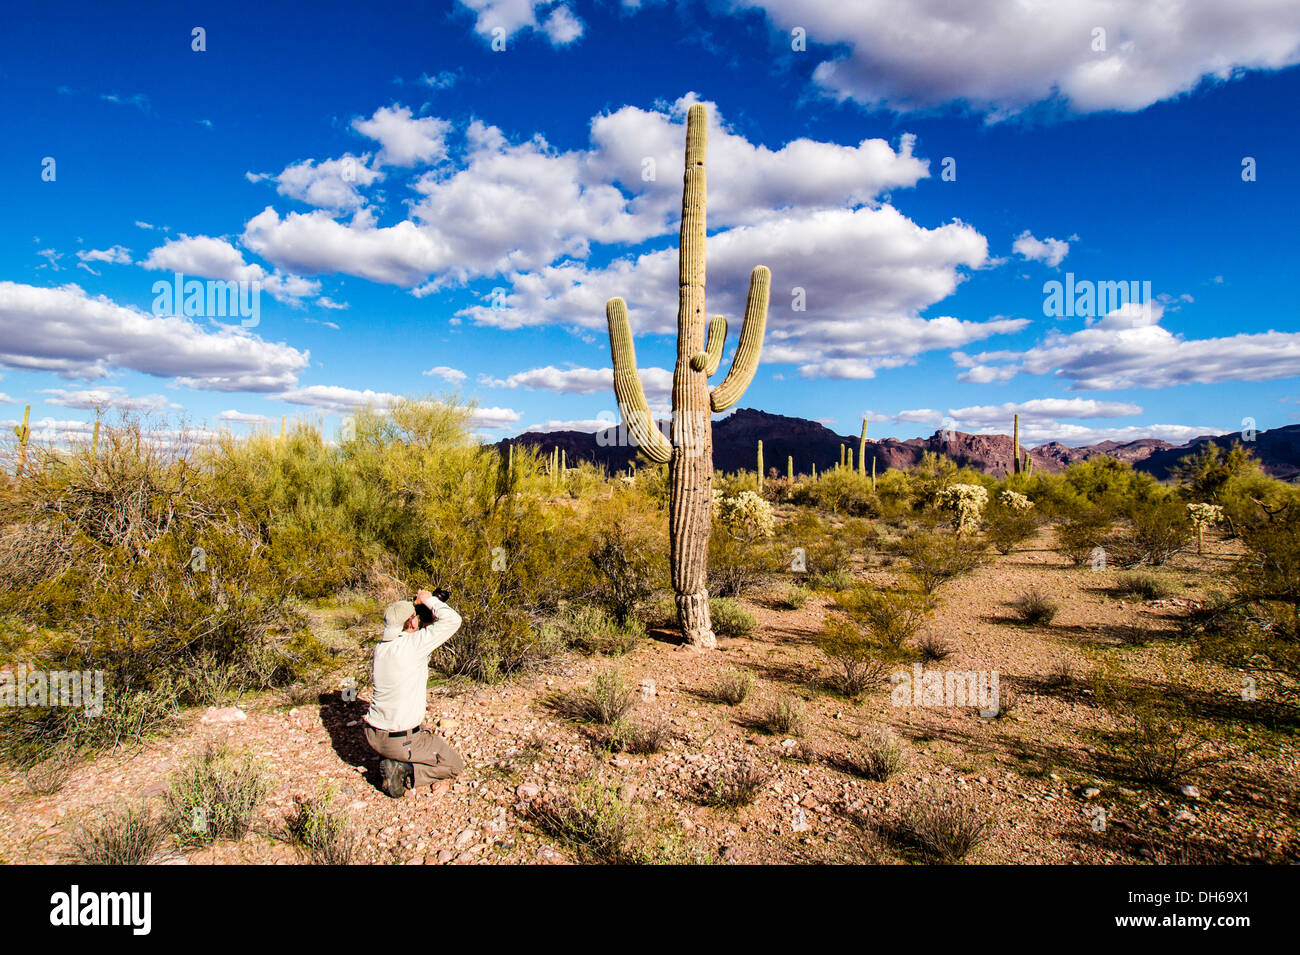 Ein Mann fotografiert einen vernarbte Saguaro-Kaktus in eine typische Landschaft der Sonora-Wüste. Stockfoto